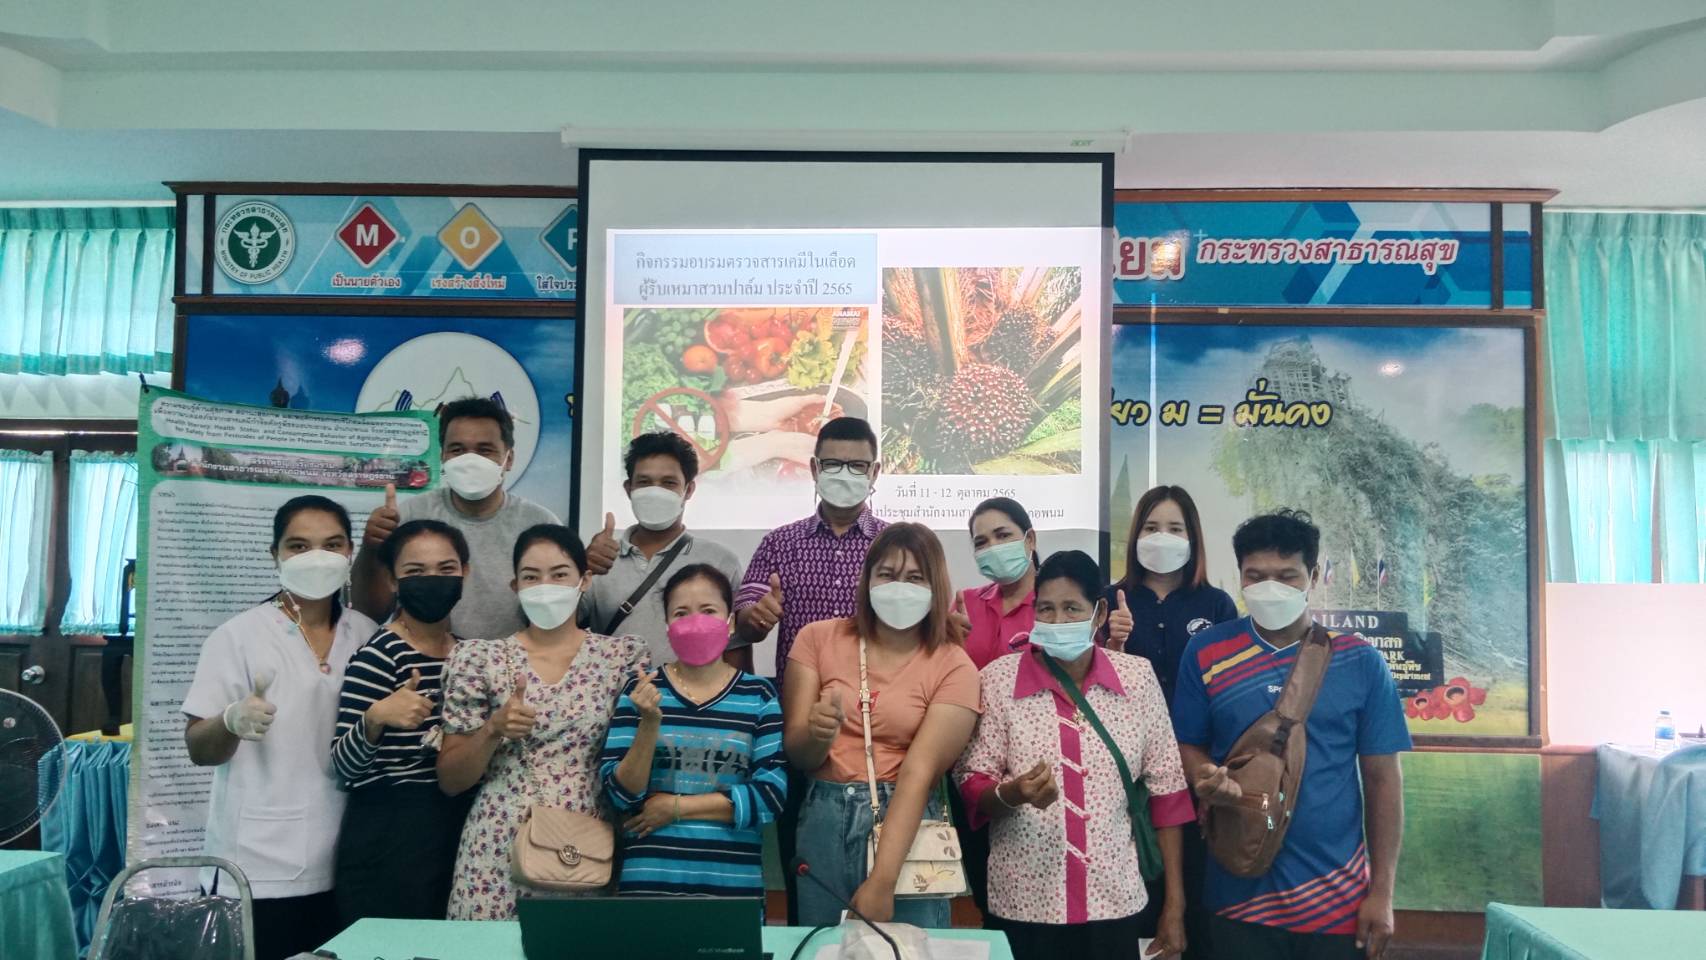 วันที่ 11- 12 ตุลาคม 2565 เจ้าหน้าที่สาธารณสุขร่วมกิจกรรมตรวจสารเคมีในเลือดเกษตรกรผู้ทำสวนปาล์มแปลงใหญ่ของสหกรณ์นิคมพนม ณ ห้องประชุมสำนักงานสาธารณสุขอำเภอพนม และวัดสองพี่น้อง